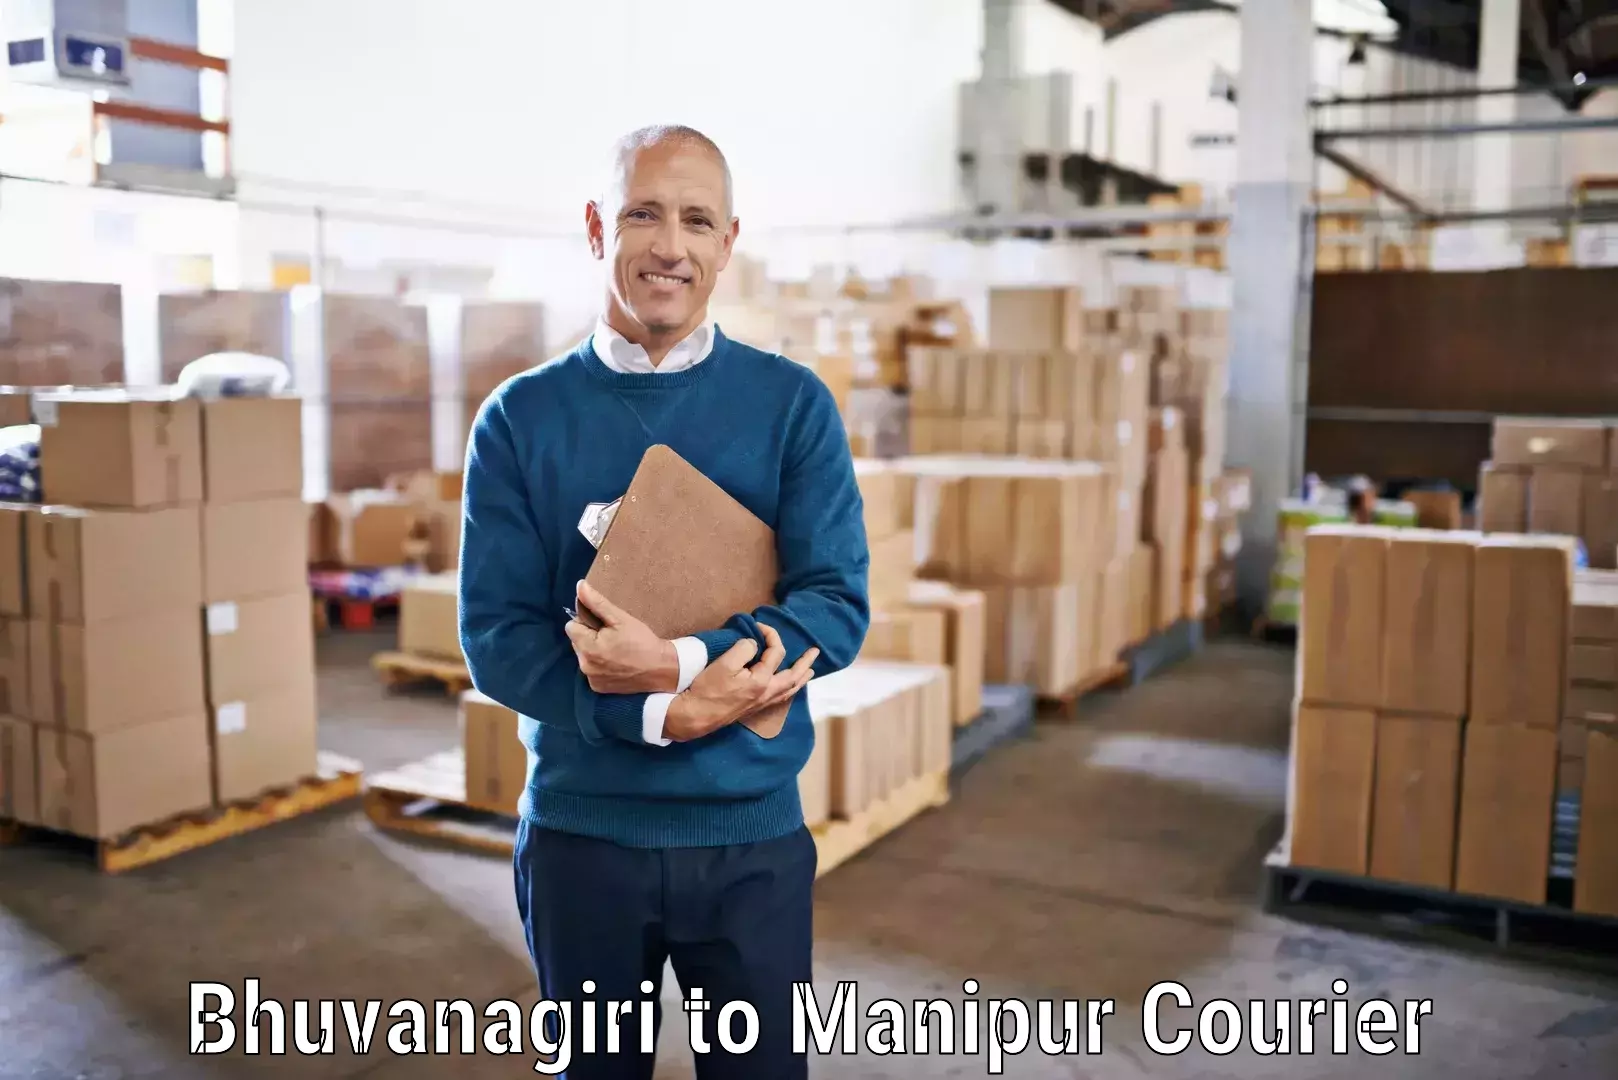 Premium courier solutions Bhuvanagiri to Manipur